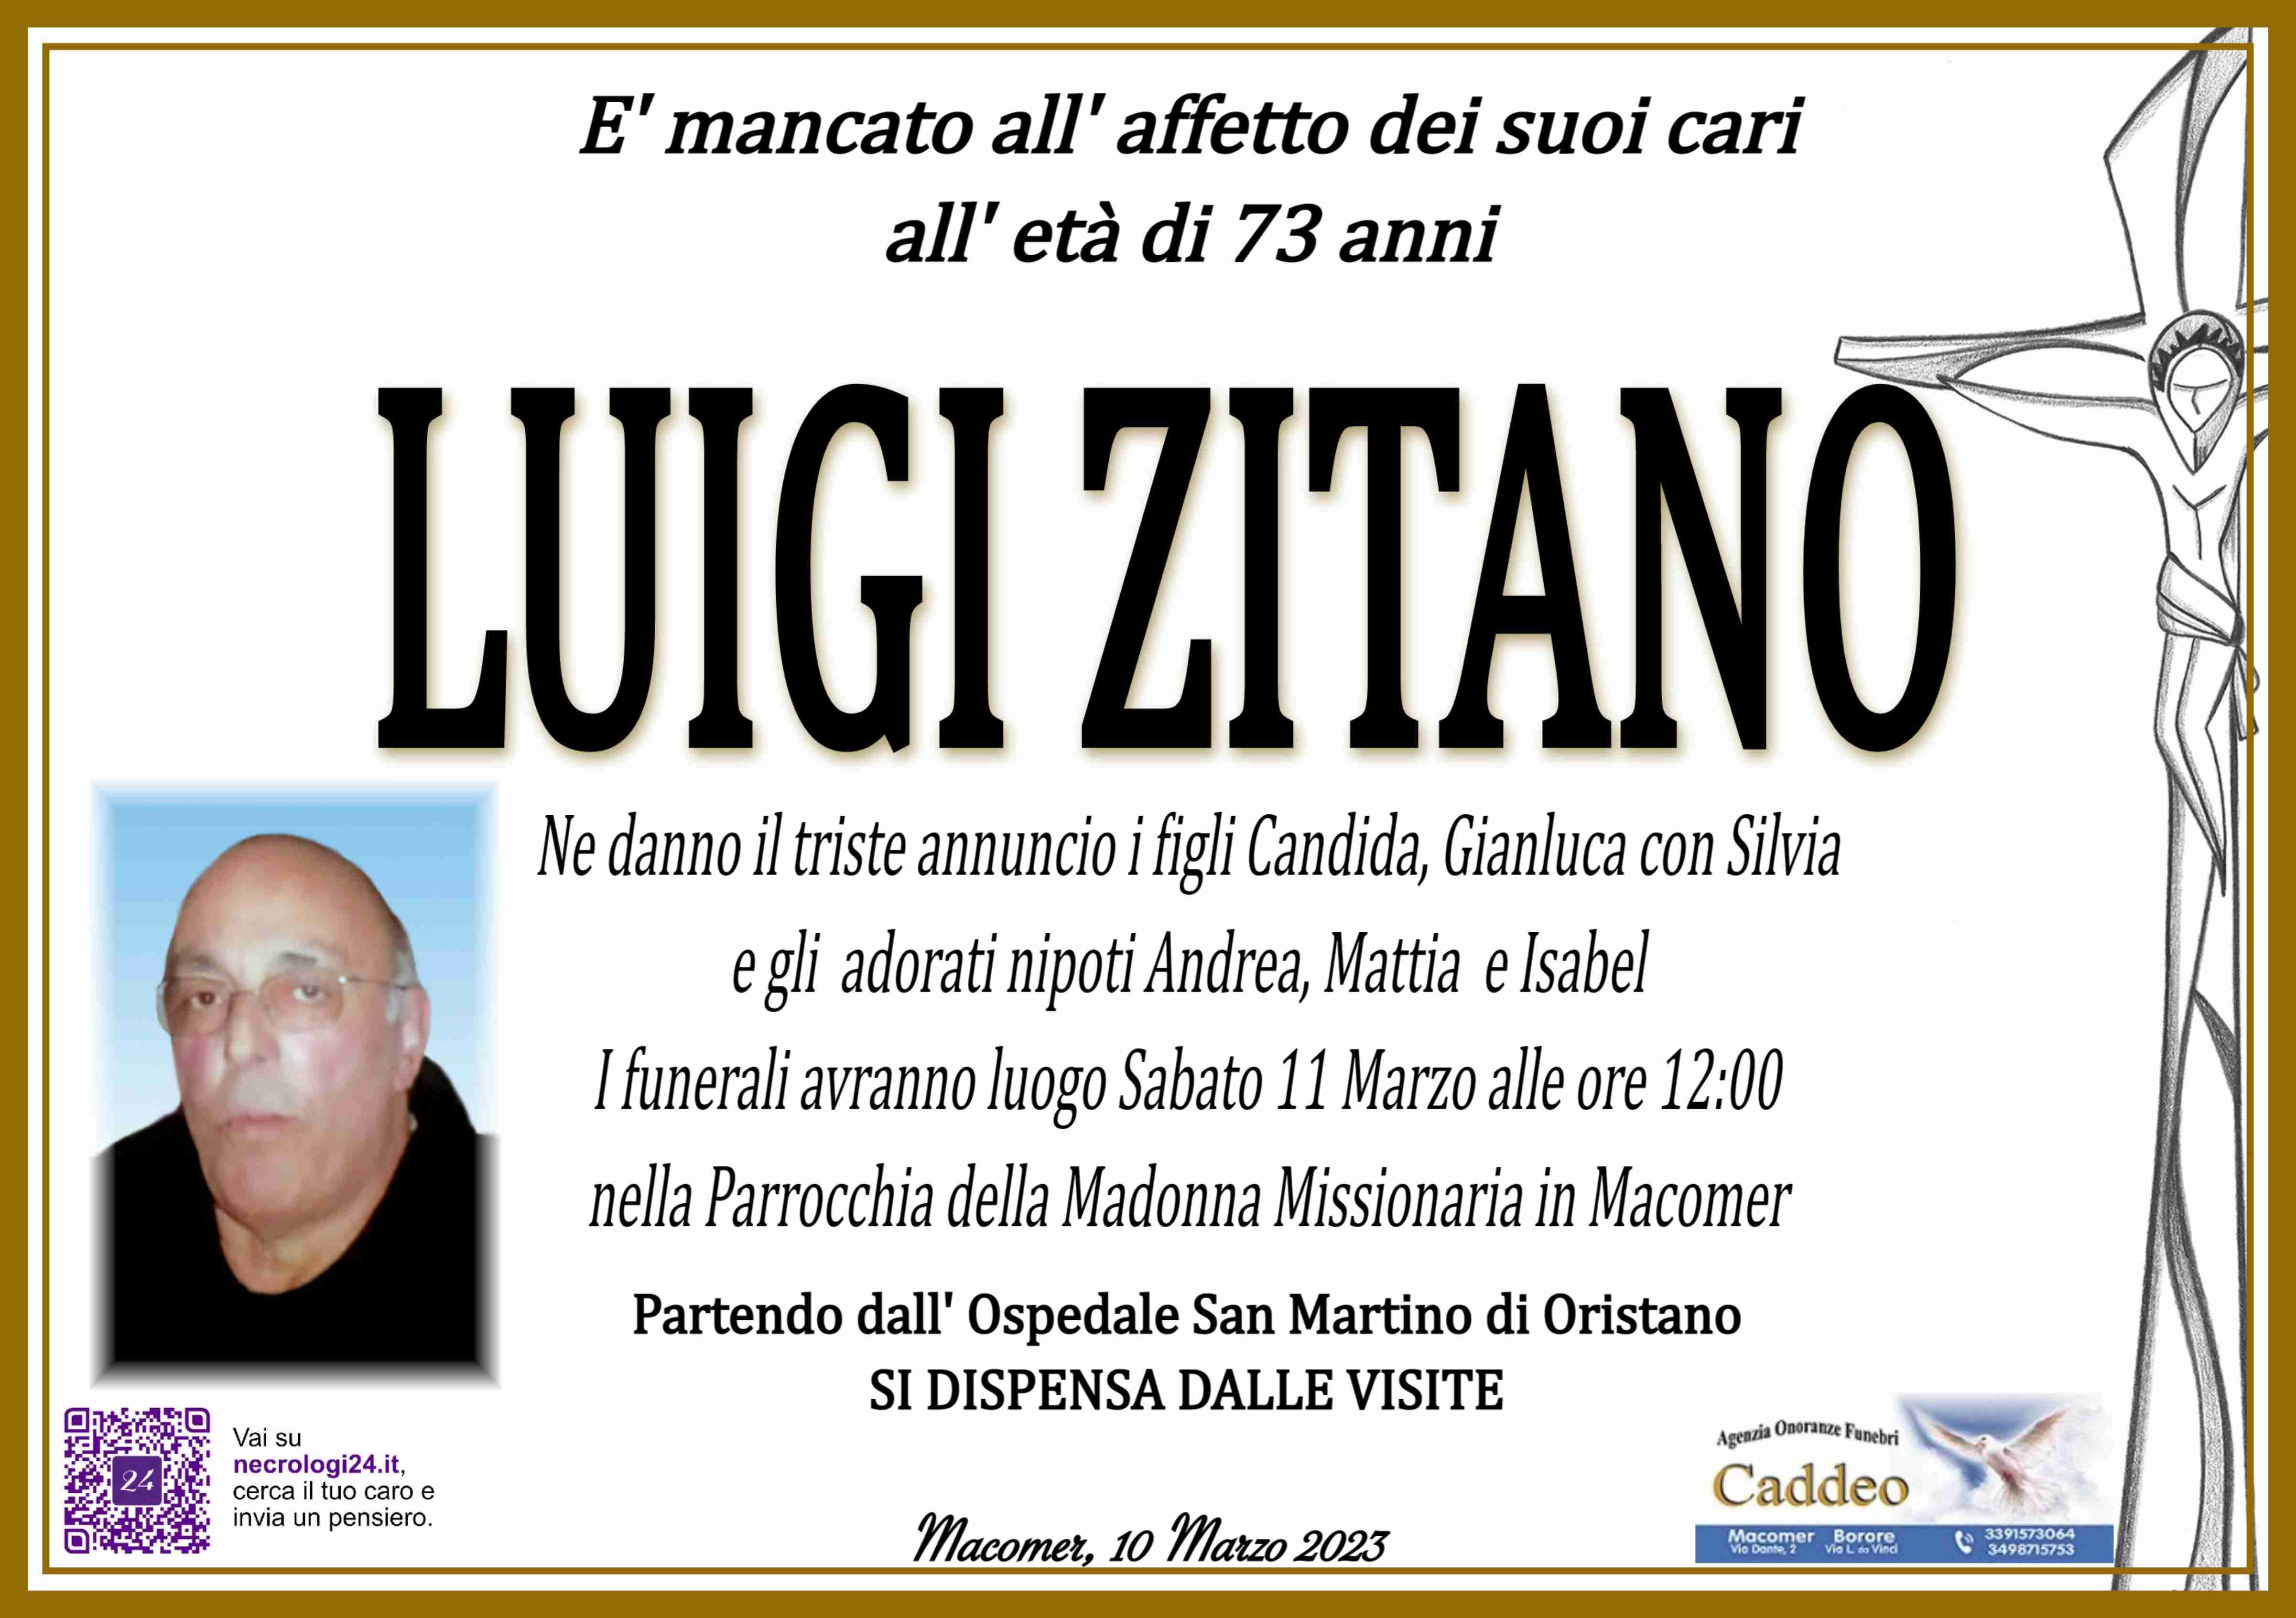 Luigi Zitano